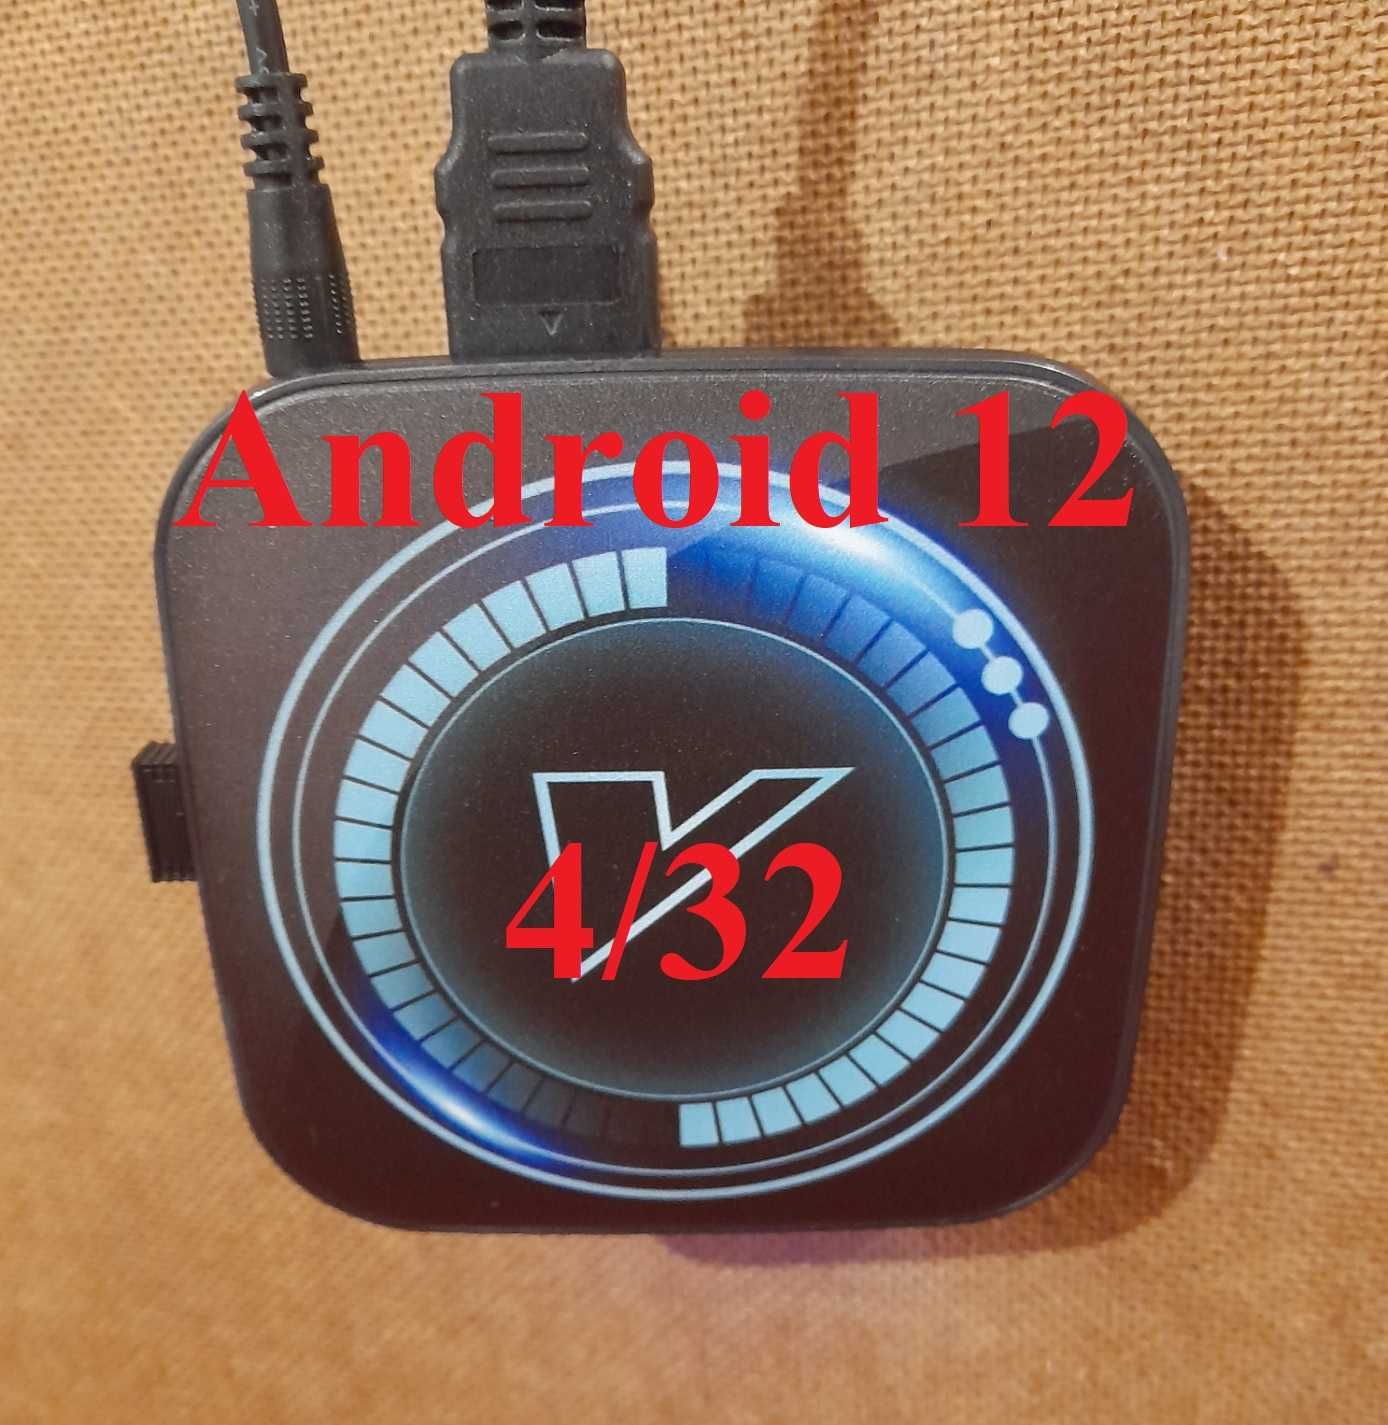 ТВ бокс 4К Vontar H618 4/32, Android 12. Налаштована.